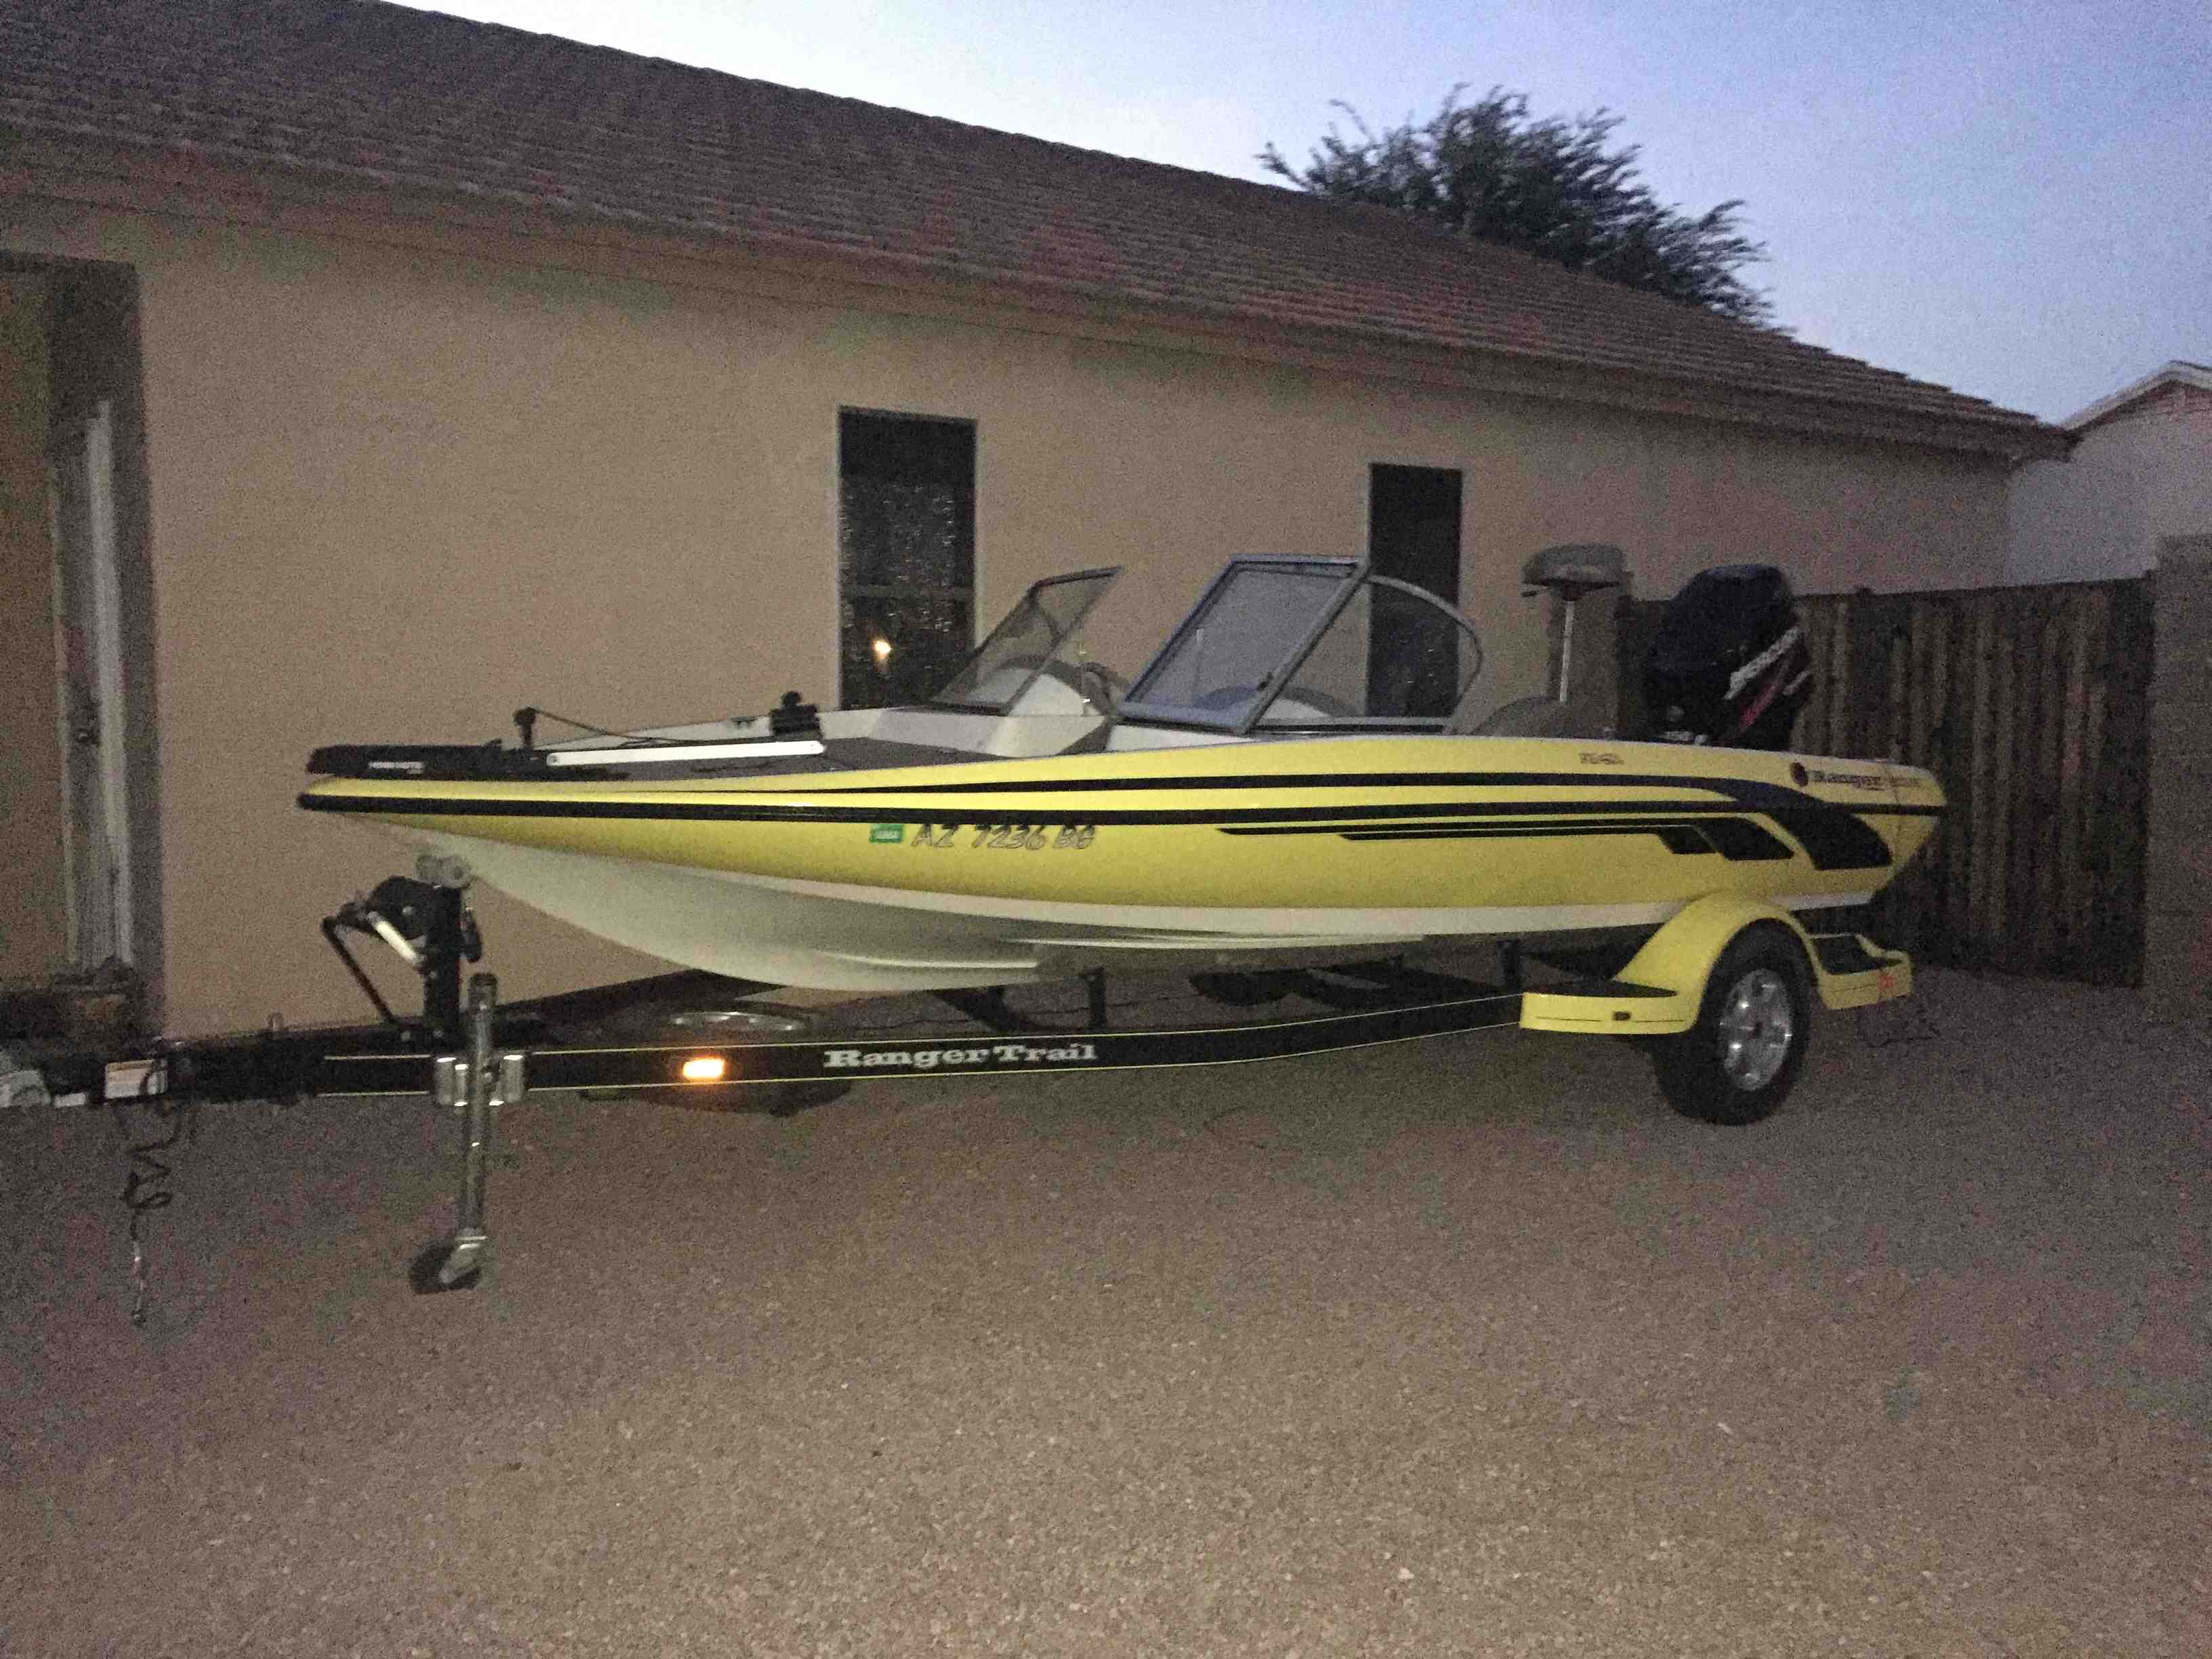  boat rentals Arizona Phoenix Arizona  Ranger Reatta  19 